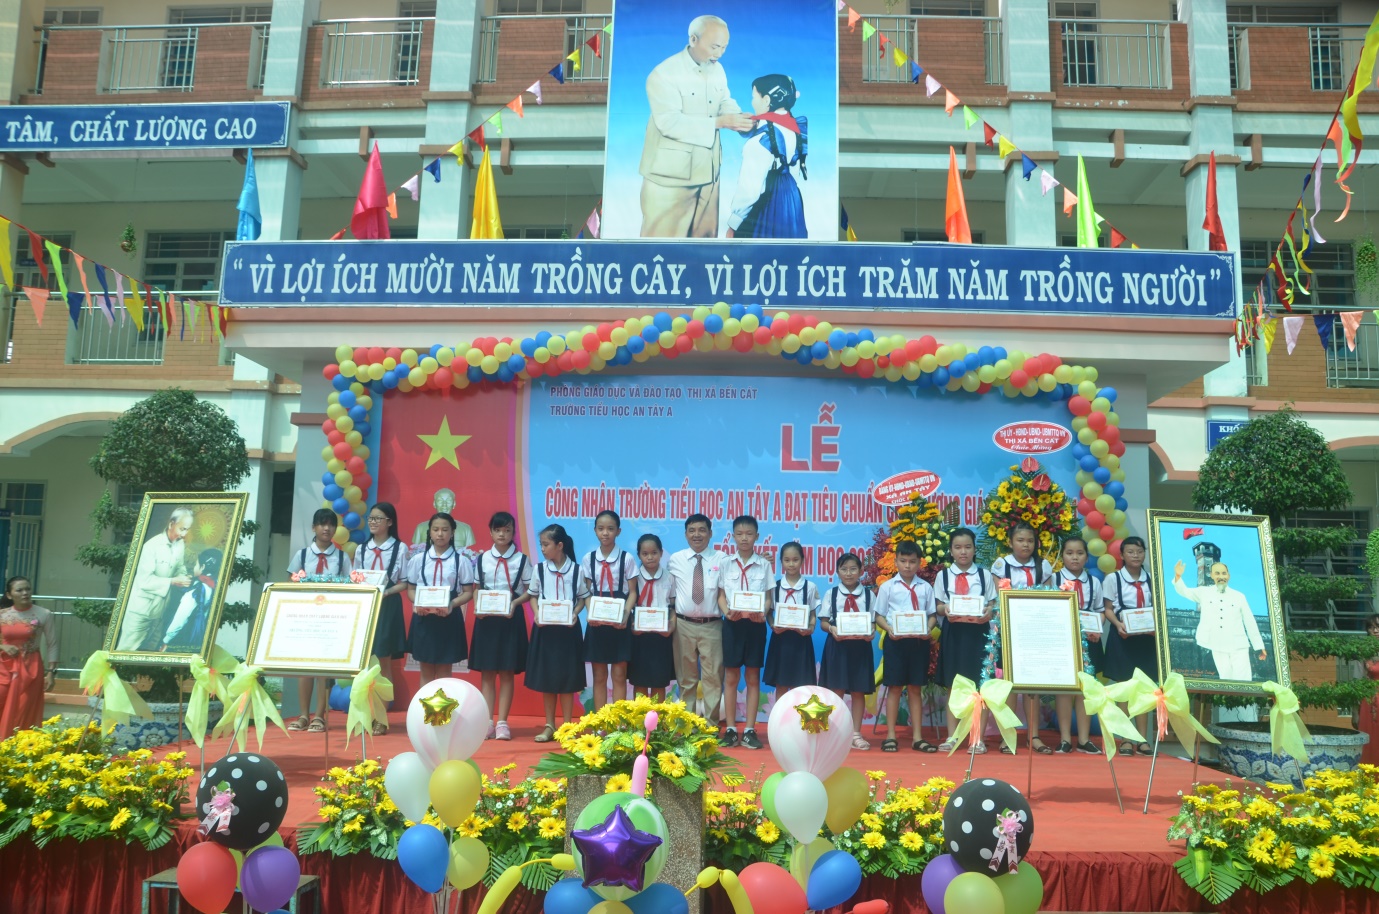 Ông Trần Đình Khương – Phó Trưởng phòng Giáo dục Tiểu học – Sở Giáo dục và Đào tạo tỉnh Bình Dương trao Giấy khen và quà cho học sinh